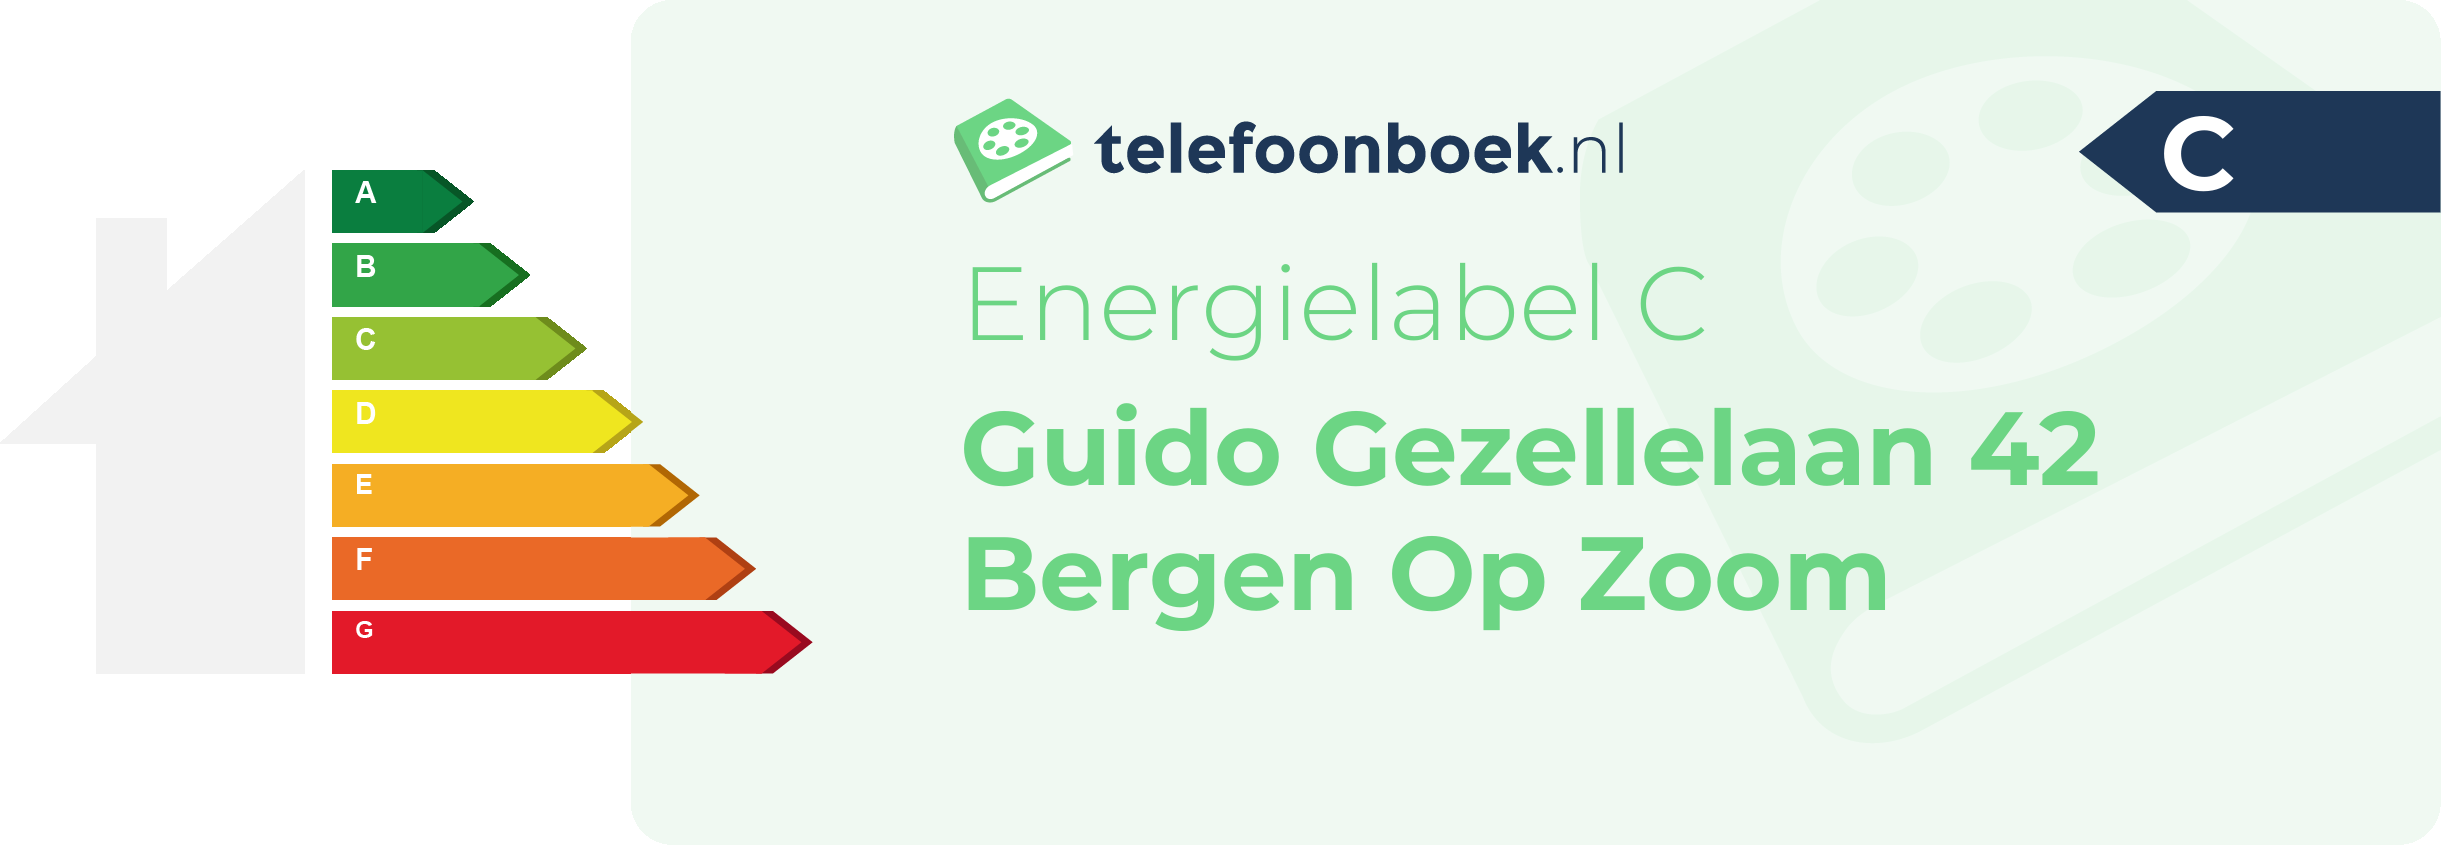 Energielabel Guido Gezellelaan 42 Bergen Op Zoom